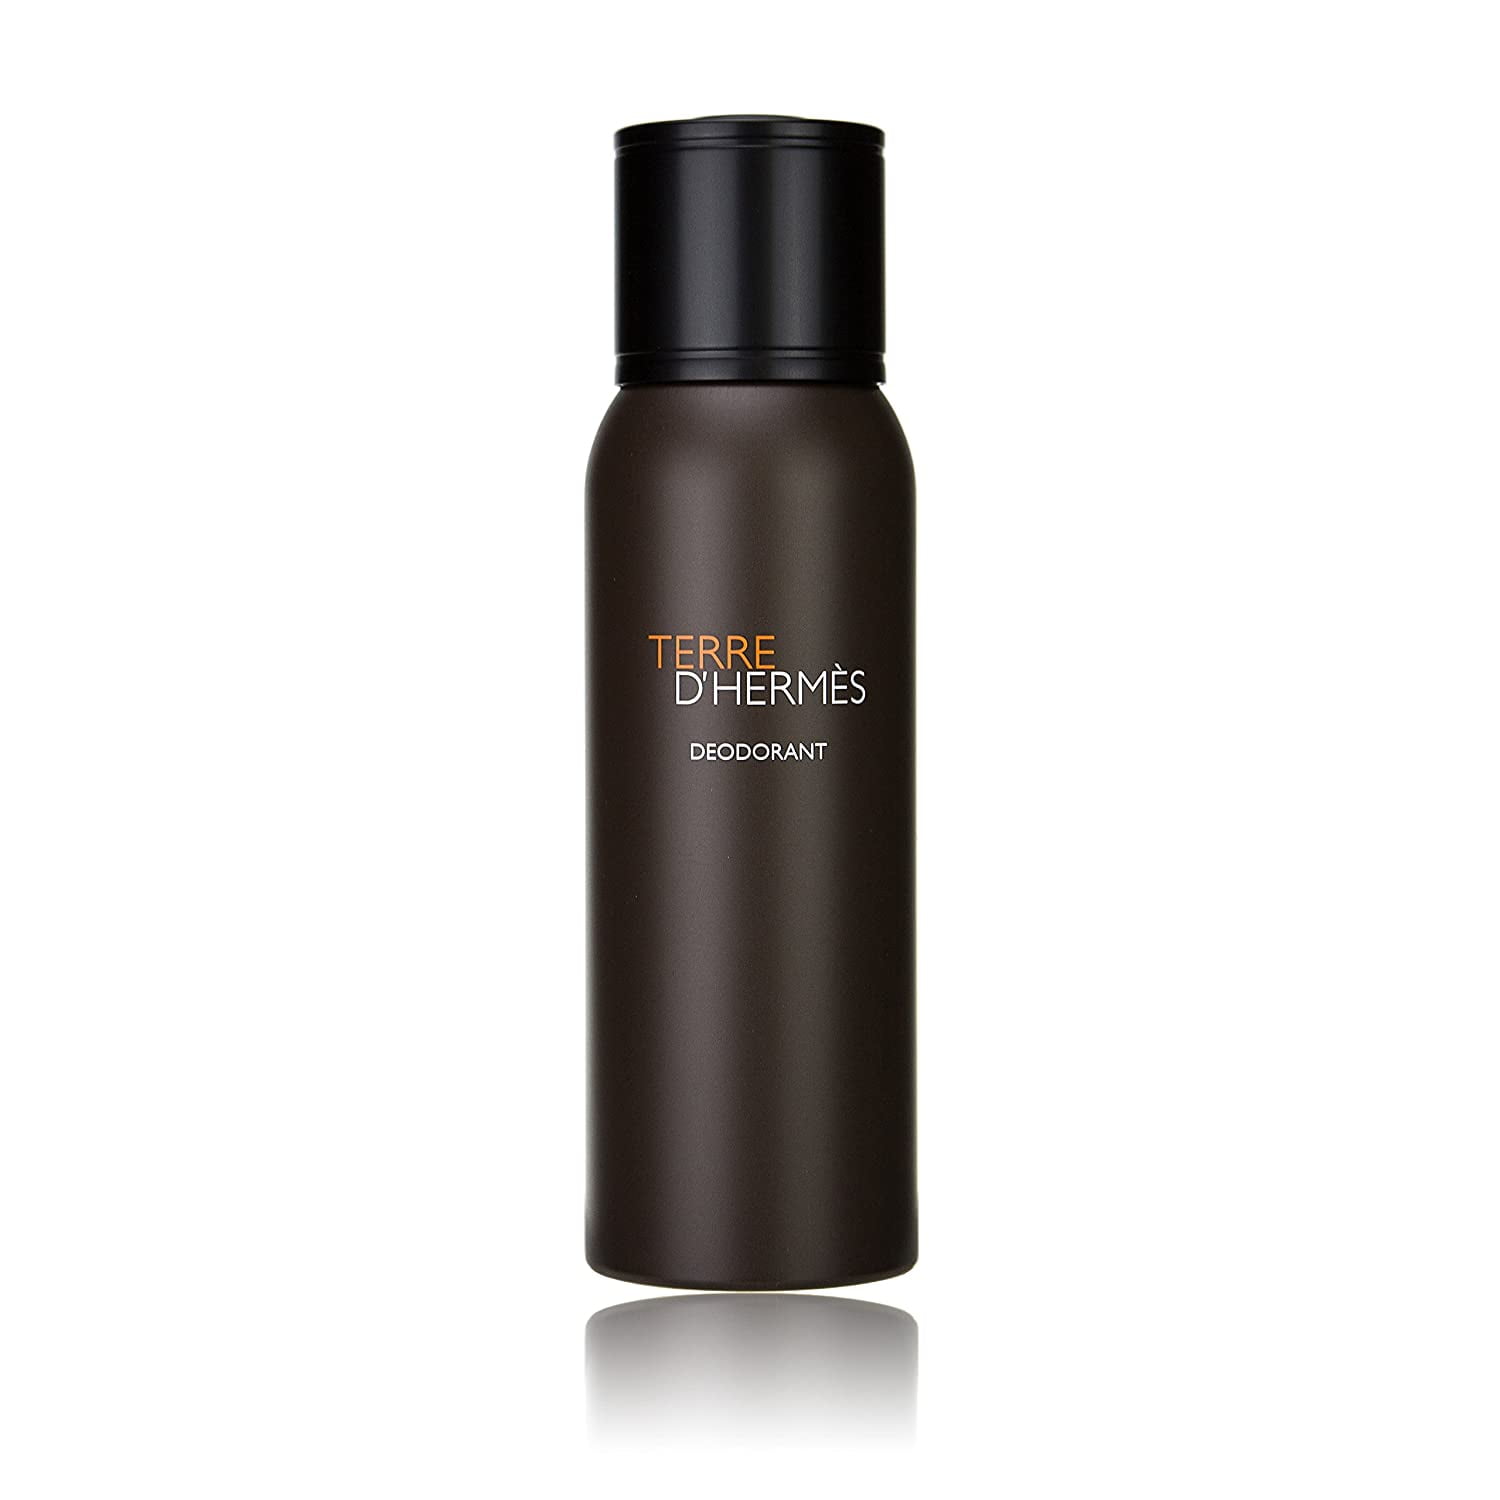 Hermes Terre D' Hermes Deodorant Spray for Men, 5 Oz